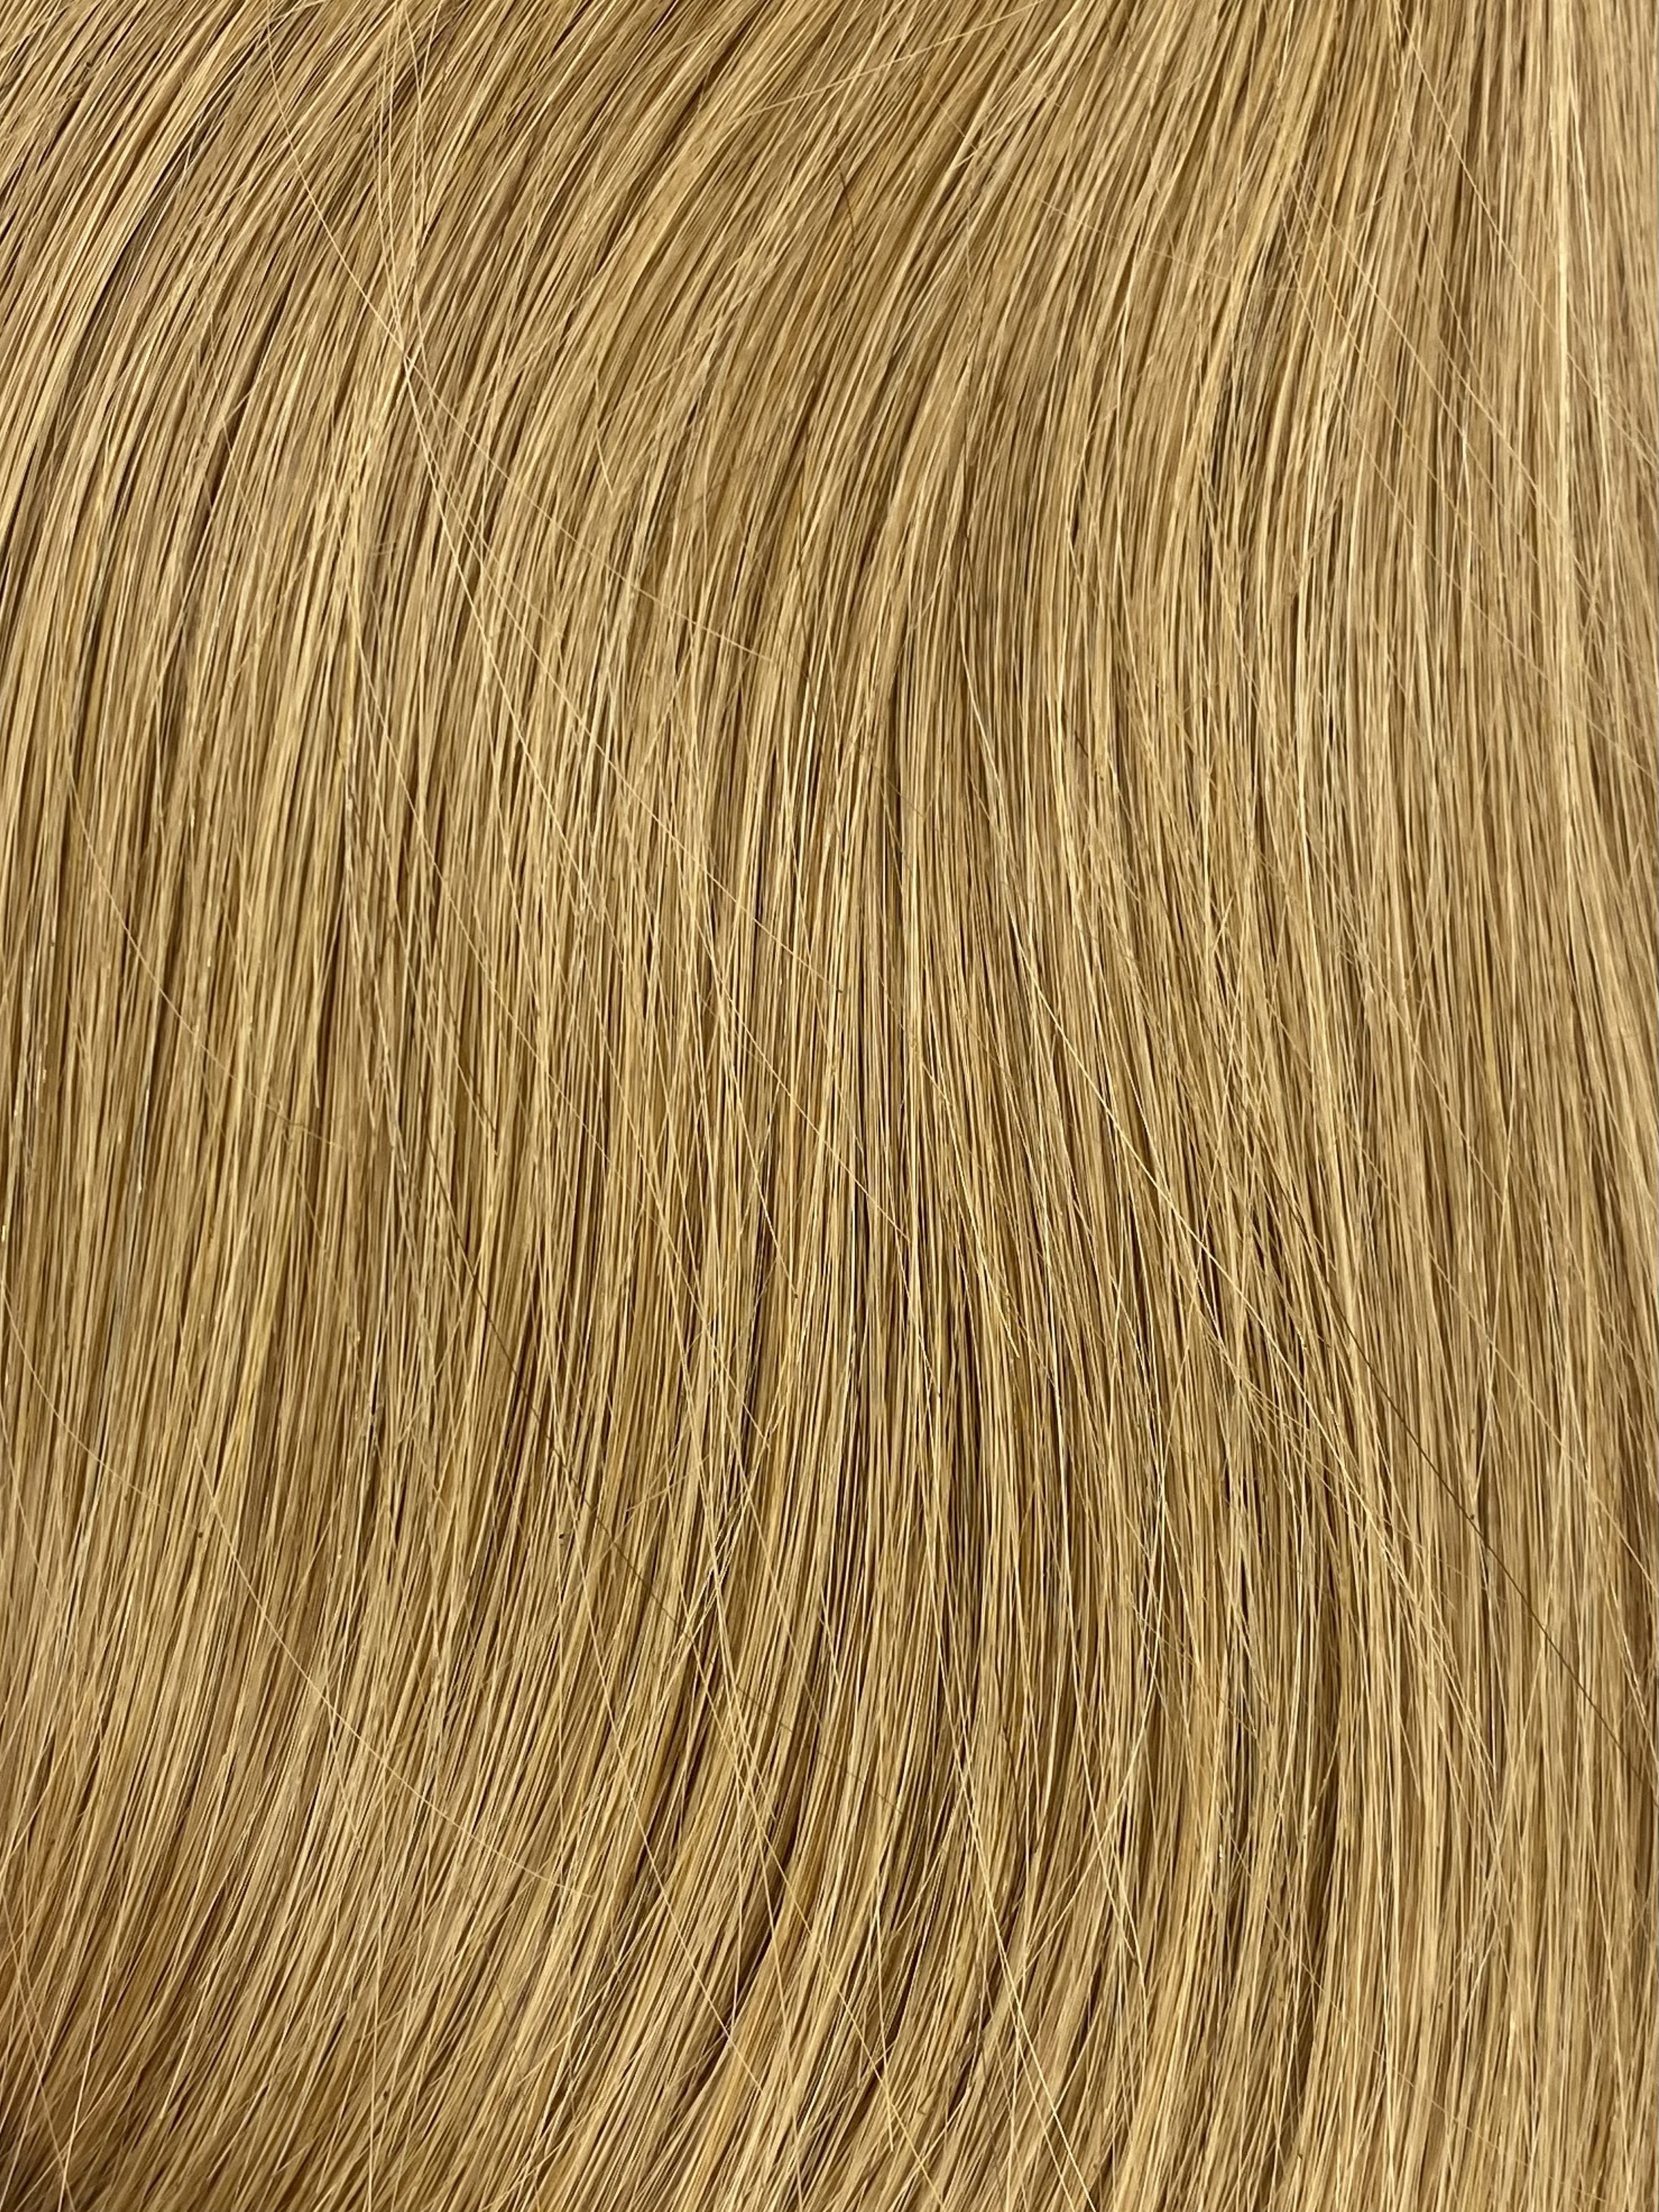 Velo Sale #12 - 20 inches - Dark Golden Blonde